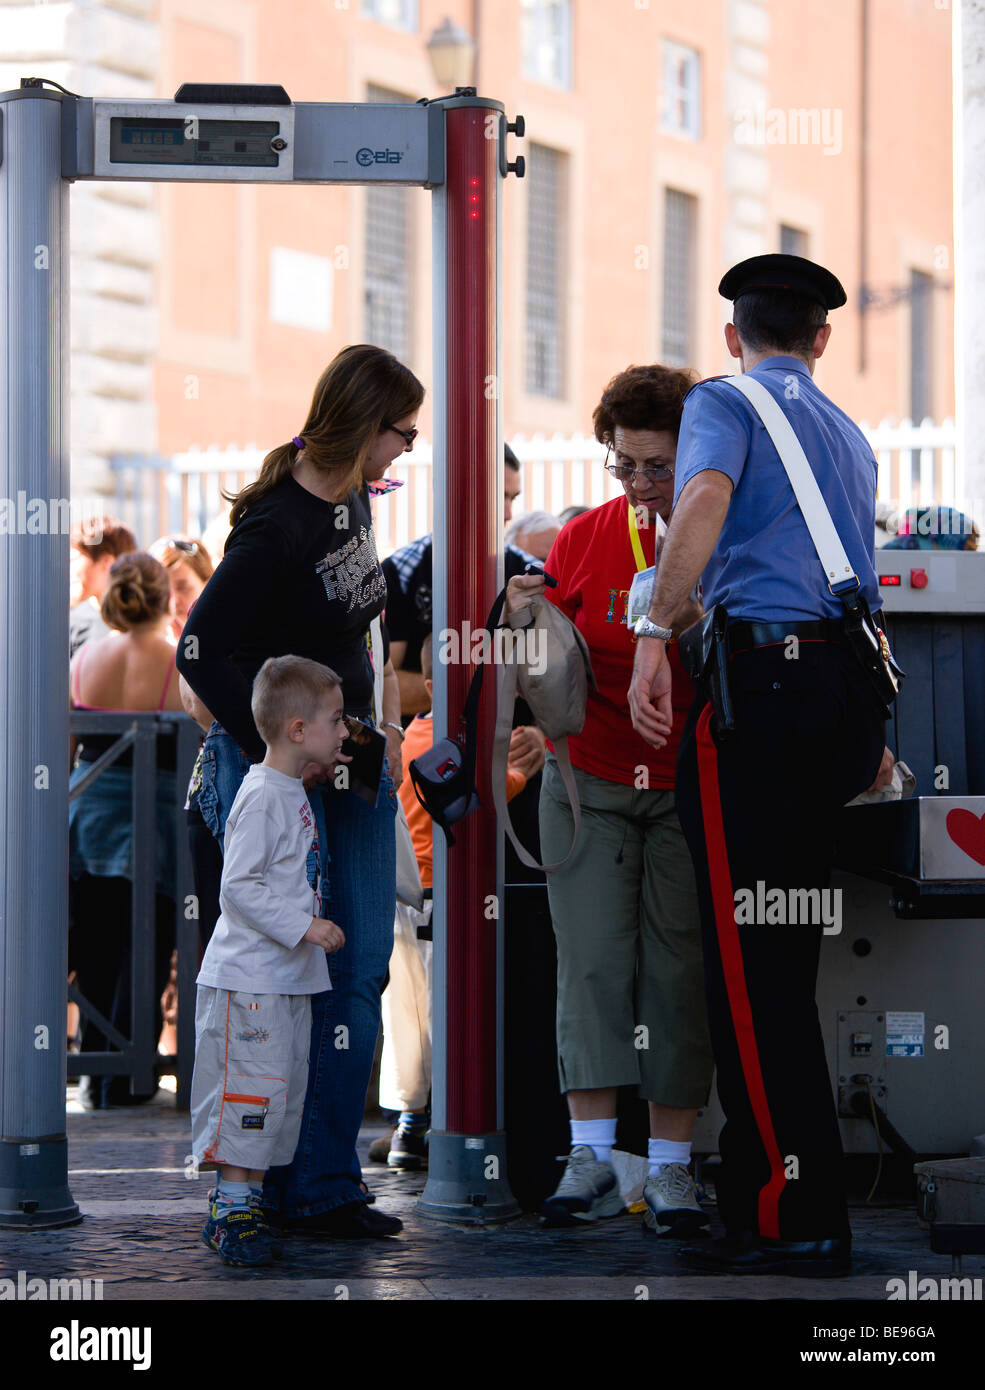 Italien Lazio Rom Vatikanstadt Frauen mit jungen bei x-ray Maschine Sicherheitskontrolle besetzt von einem Carabiniere Polizisten Stockfoto